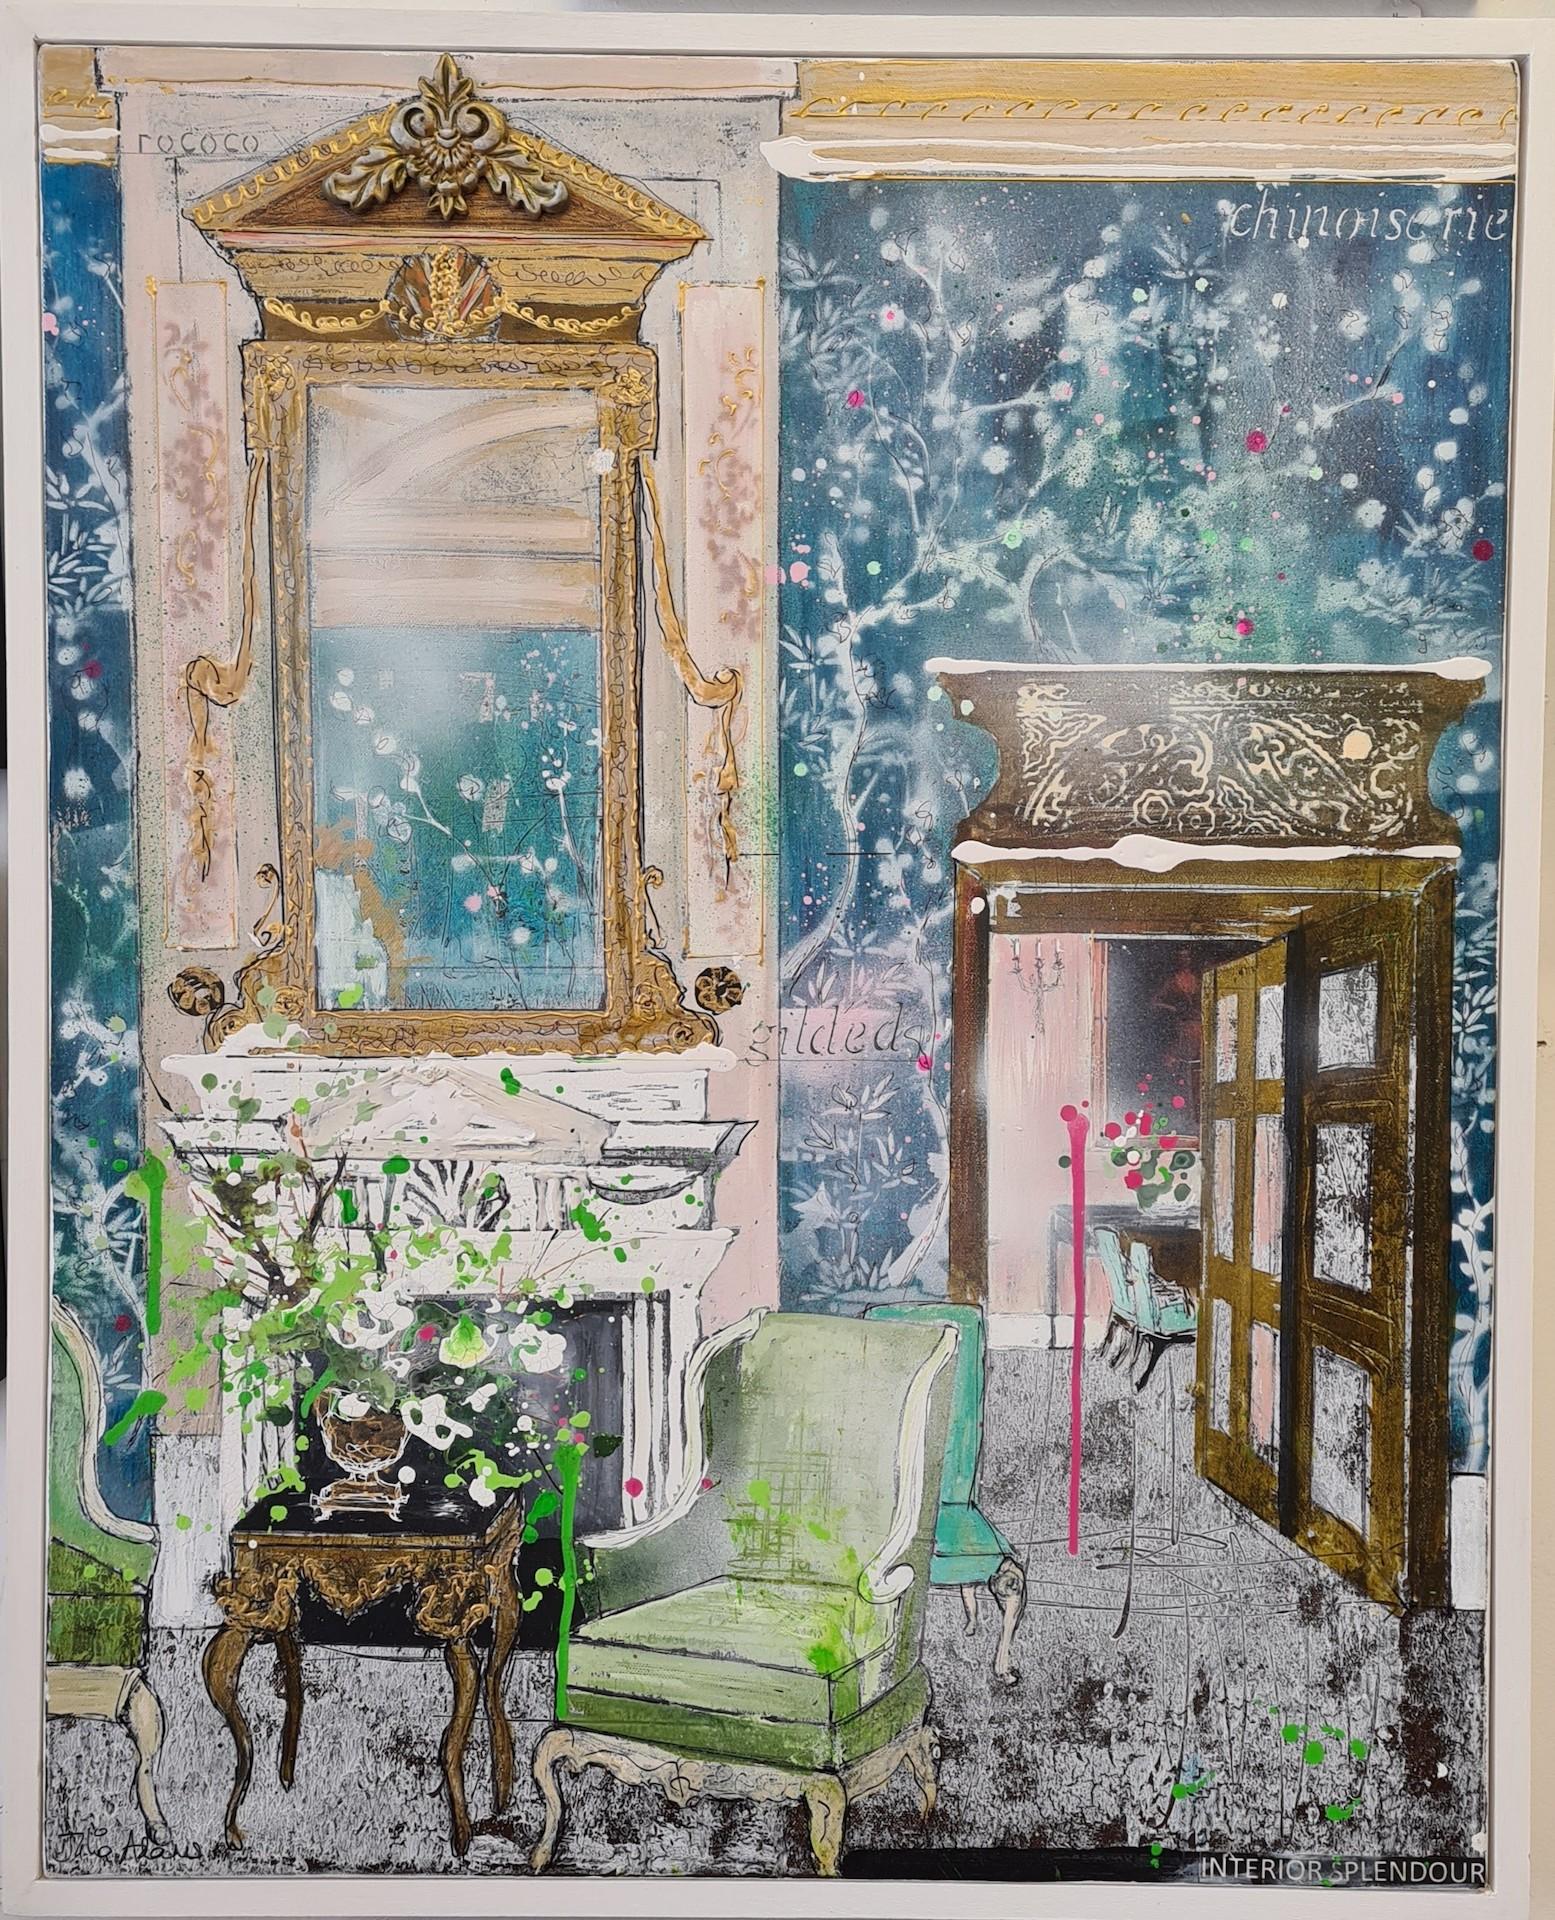 Julia Adams, Interior Splendour, Original Interior Painting, Contemporary Art